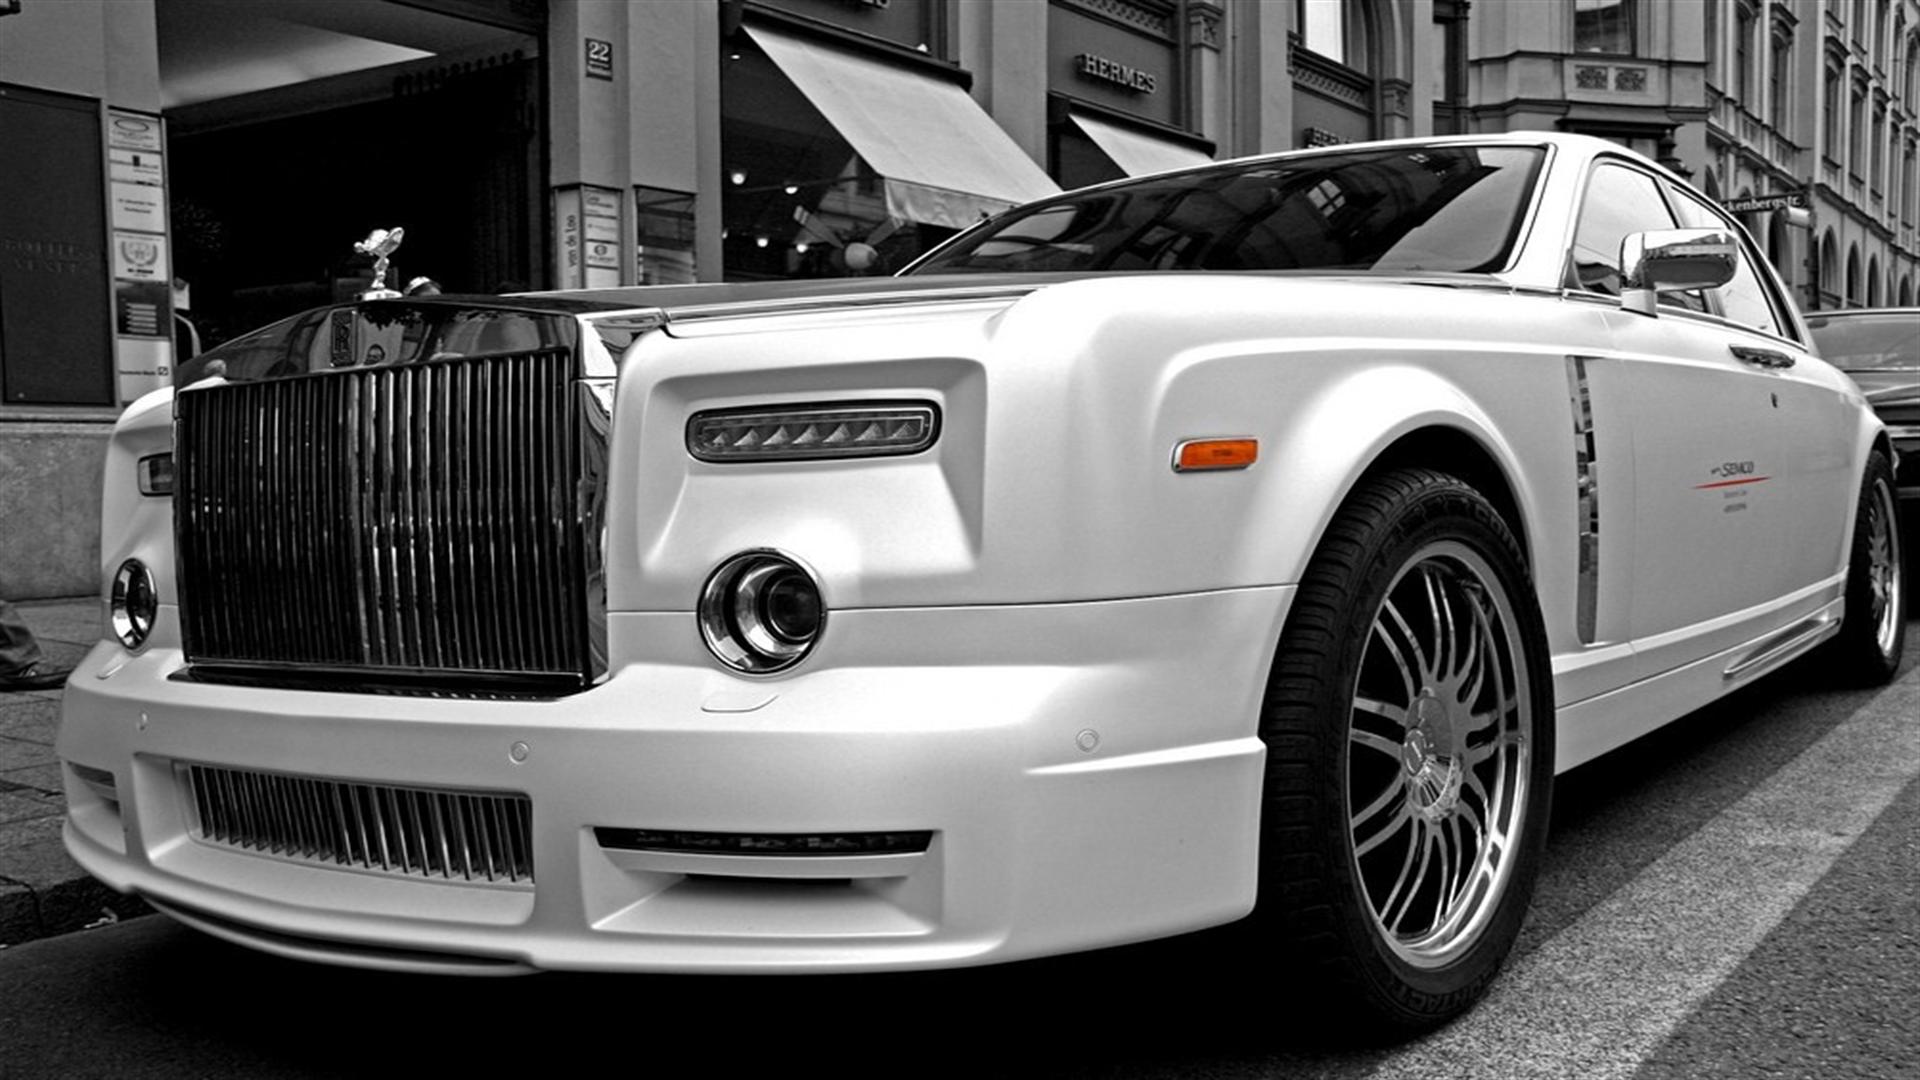 Rolls Royce Background. Rolls Royce Ghost Wallpaper, Rolls Royce Wallpaper And Rolls Royce Turbine Wallpaper